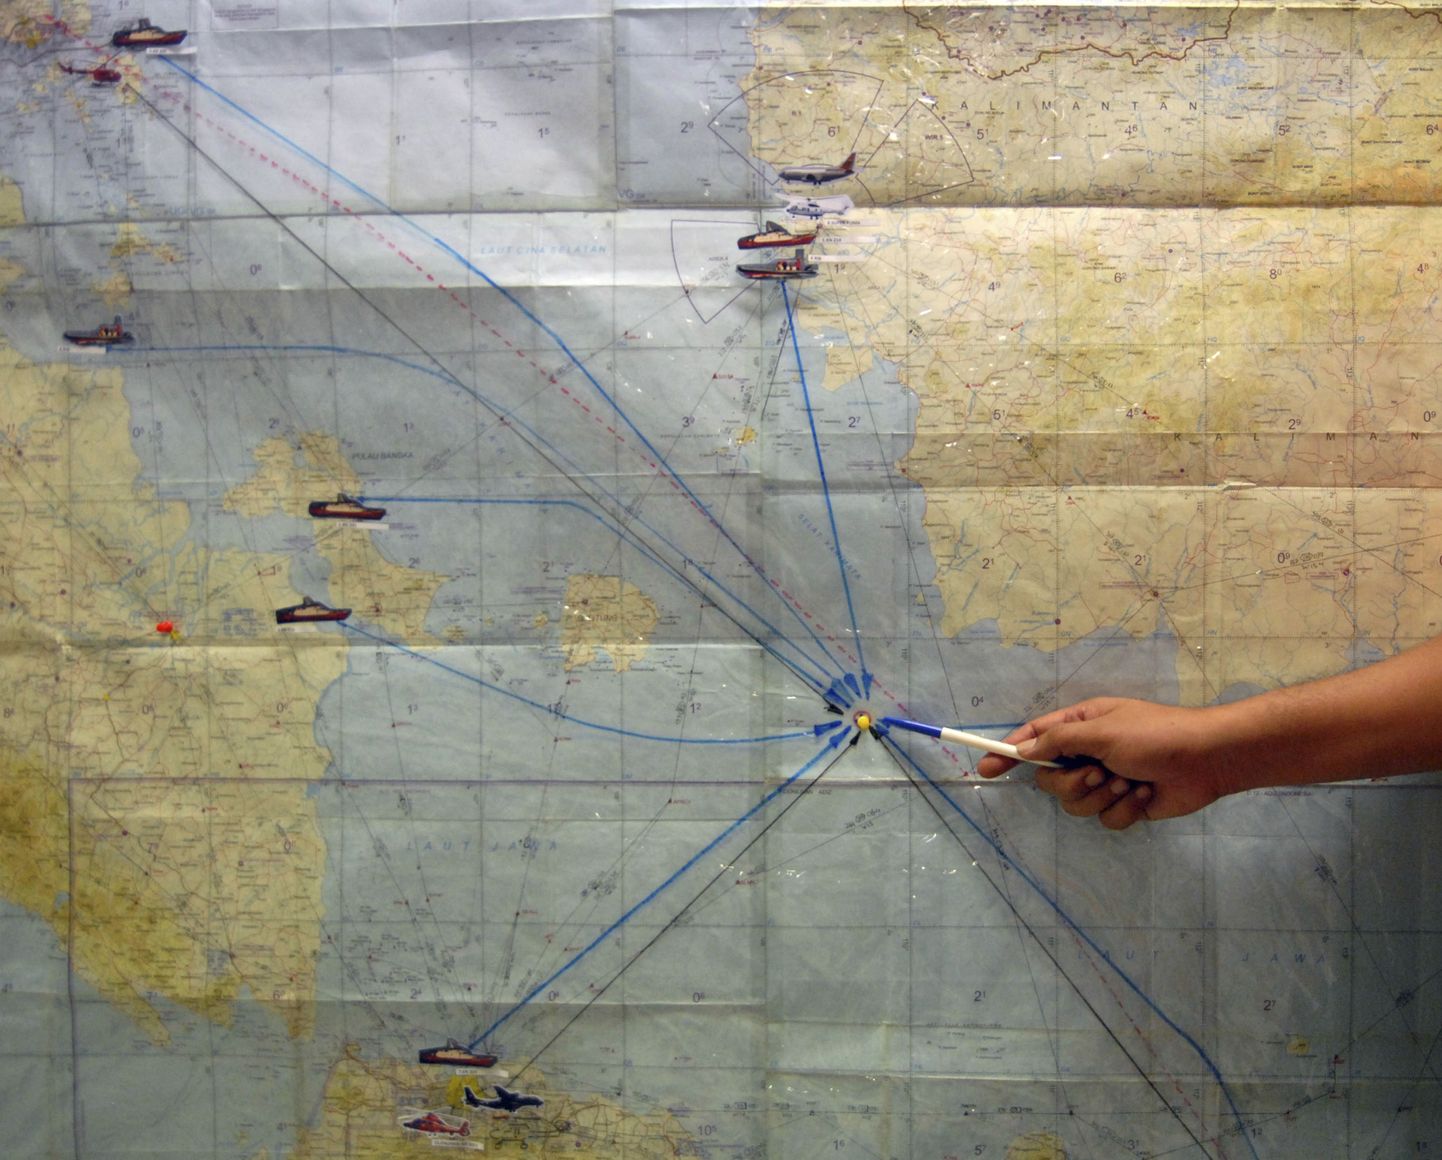 Indoneesia lennuki otsimise operatsiooni koordineerimiskeskuse töötaja näitamas kaardil ala, kust lennukit otsitakse